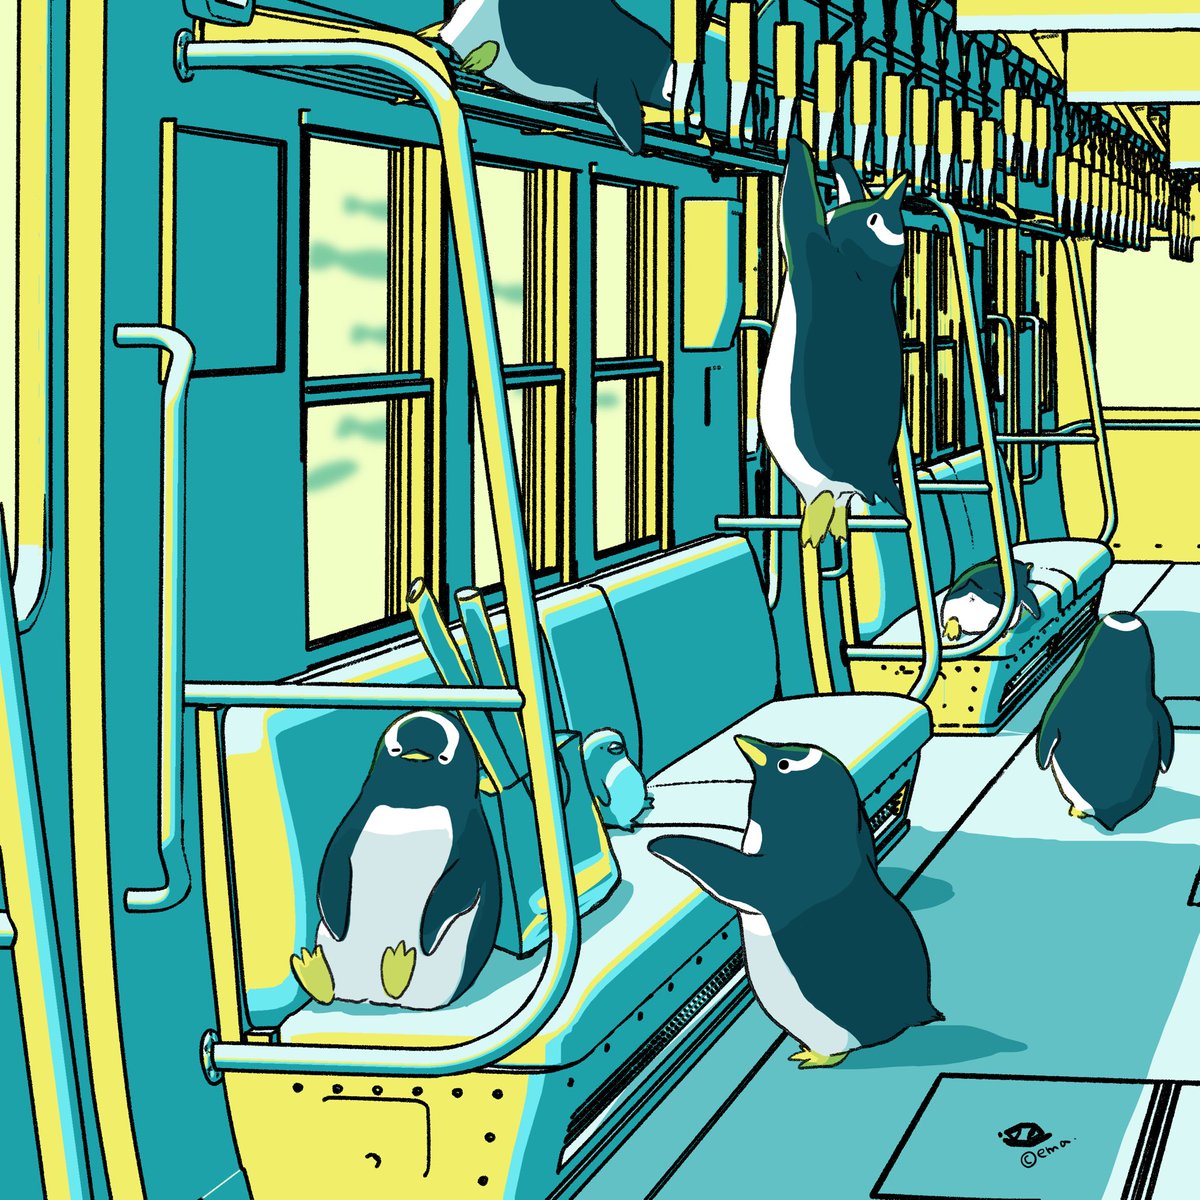 「帰りのペンギン専用列車#ペンギン #penguin #ジェンツーペンギン 」|えまごろう🐧のイラスト